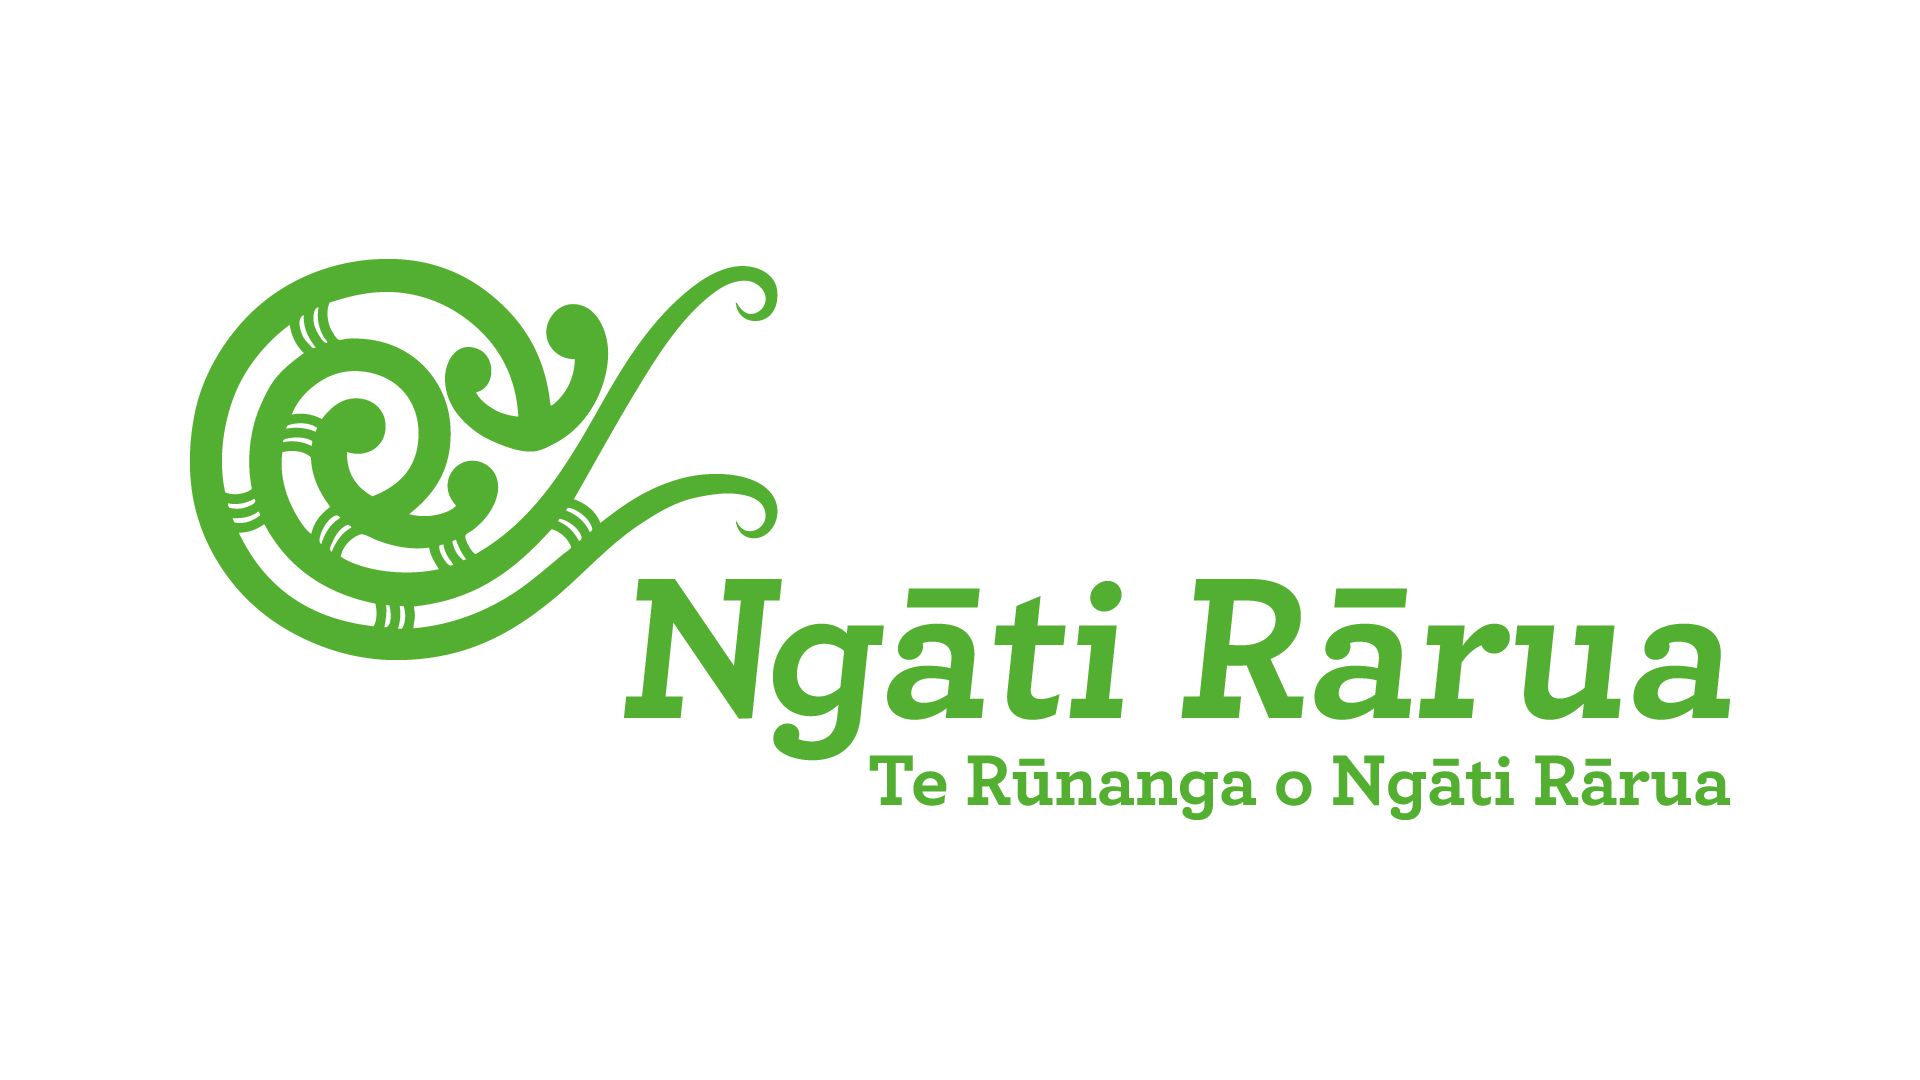 Awe-inspiring Te Mana Kuratahi will win hearts and minds